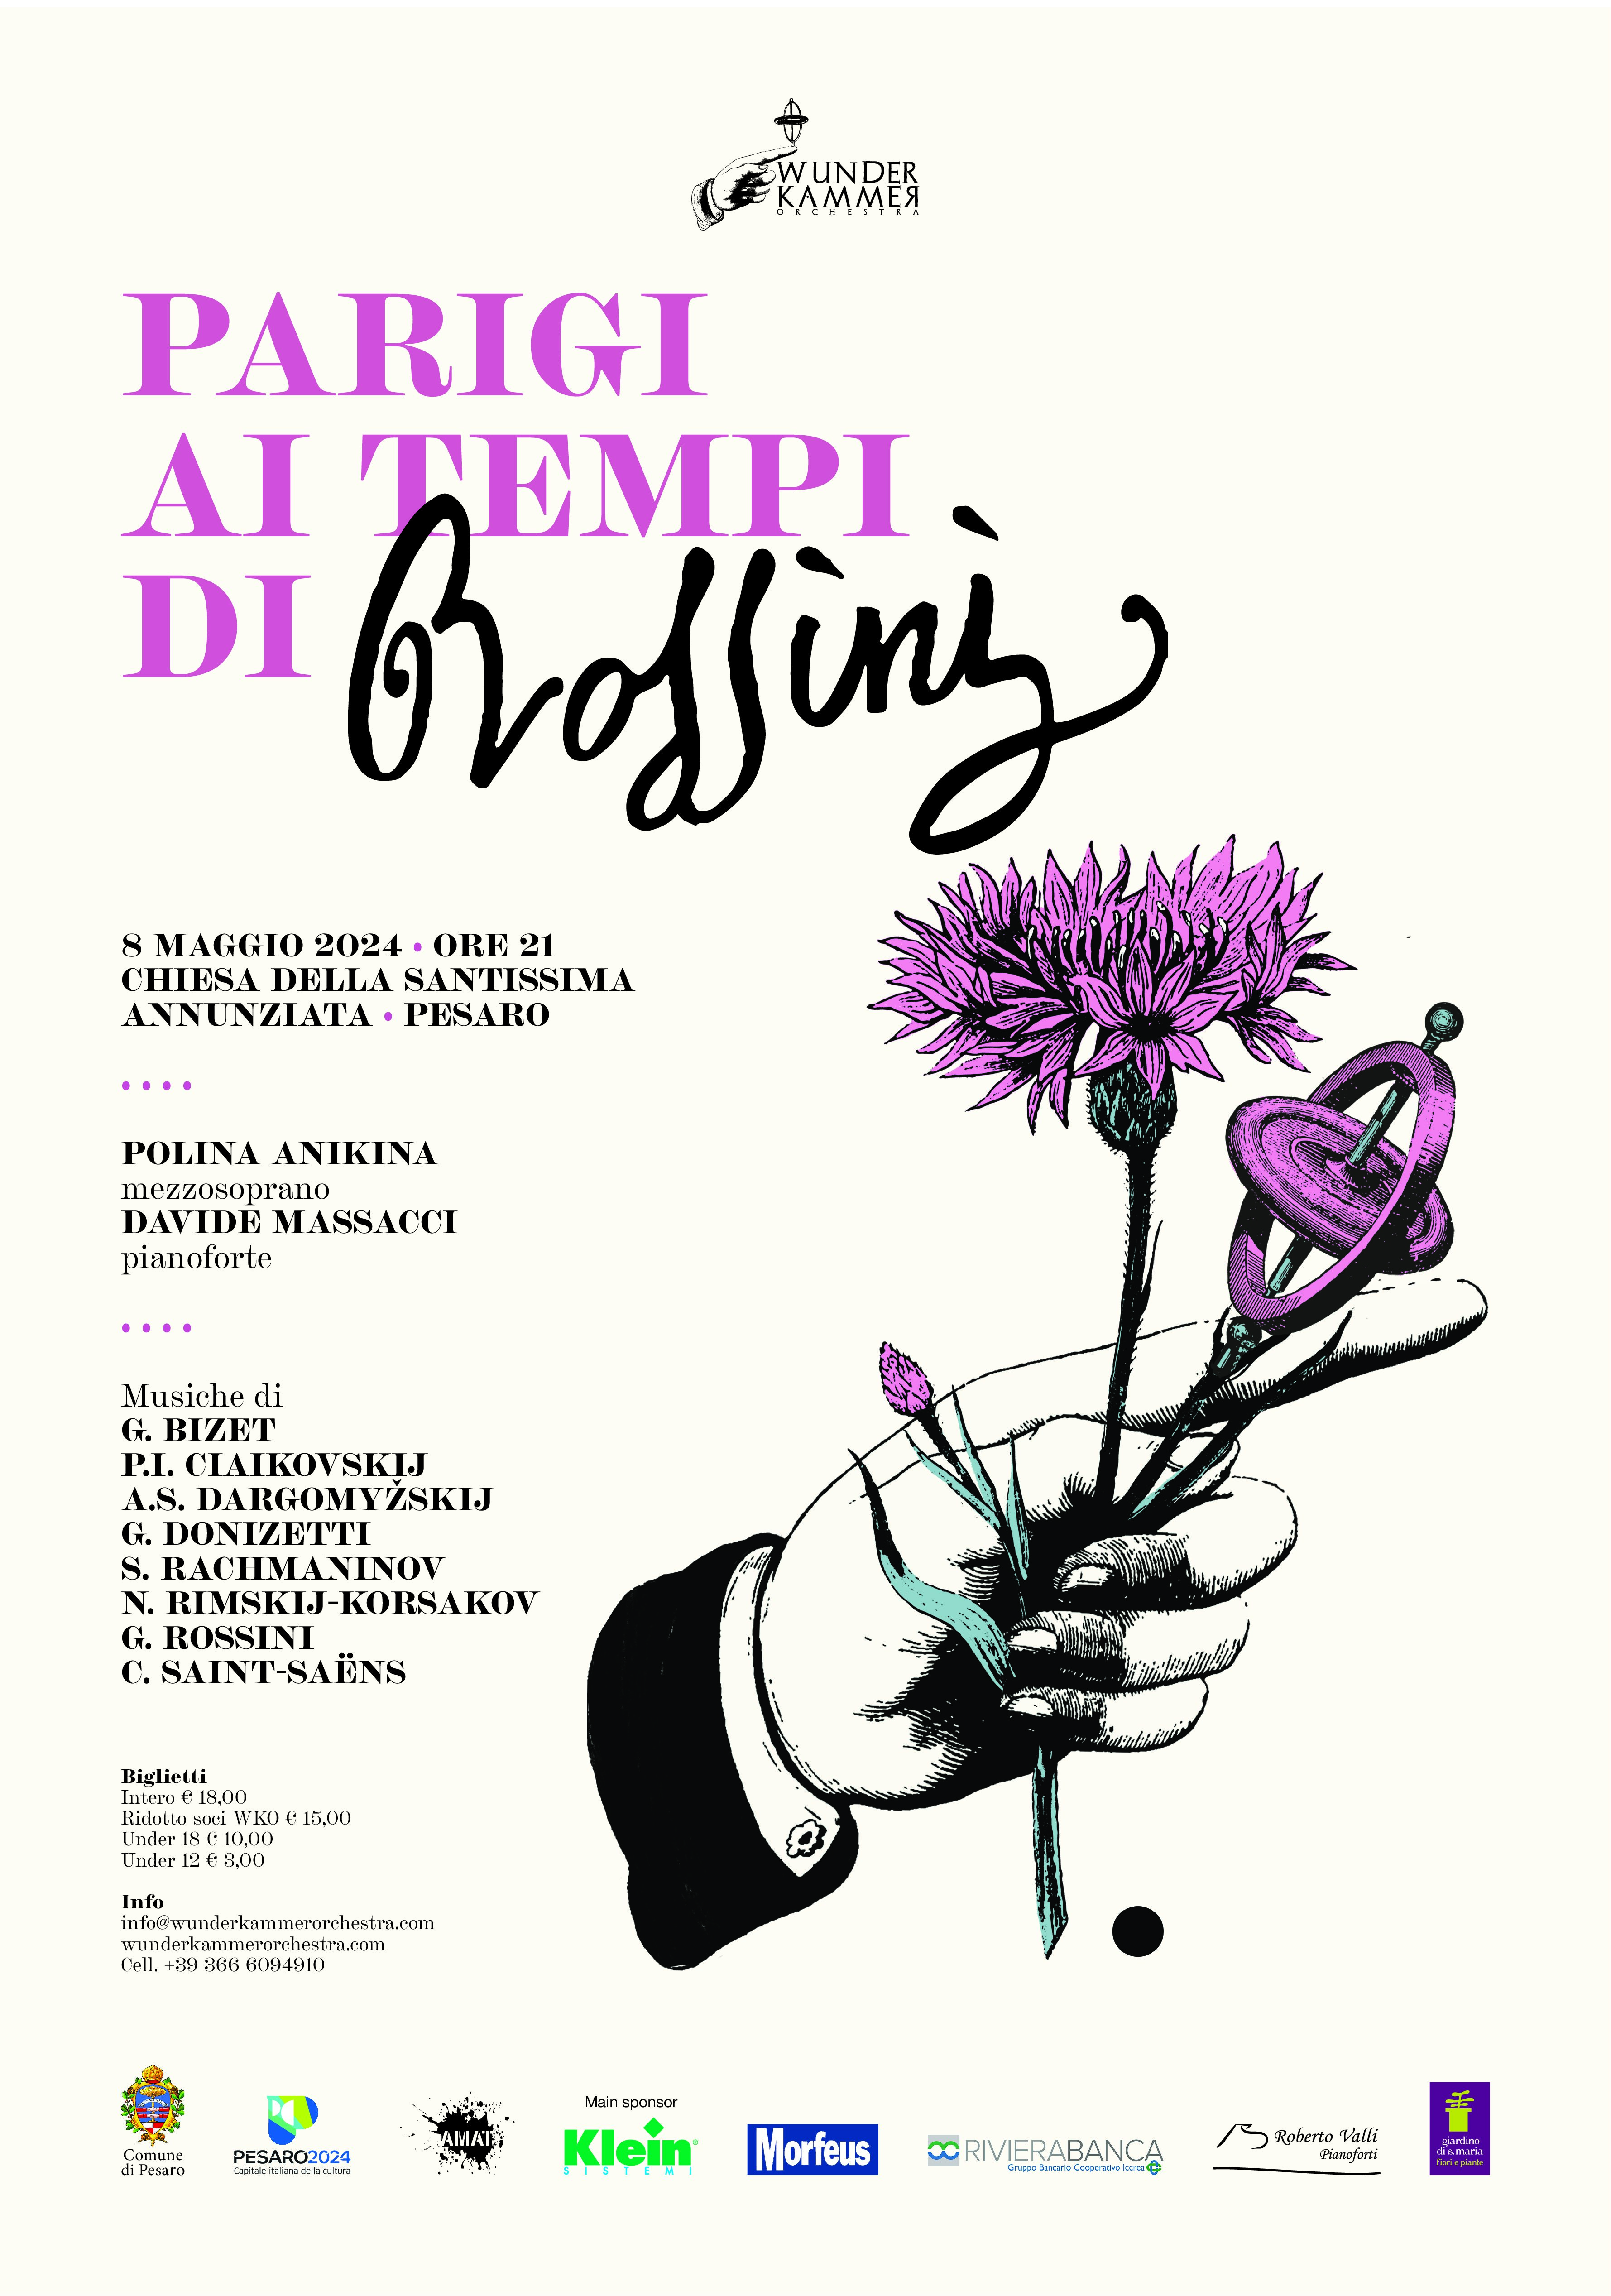 PARIGI AI TEMPI DI ROSSINI: il concerto lirico organizzato da WunderKammer Orchestra di Pesaro